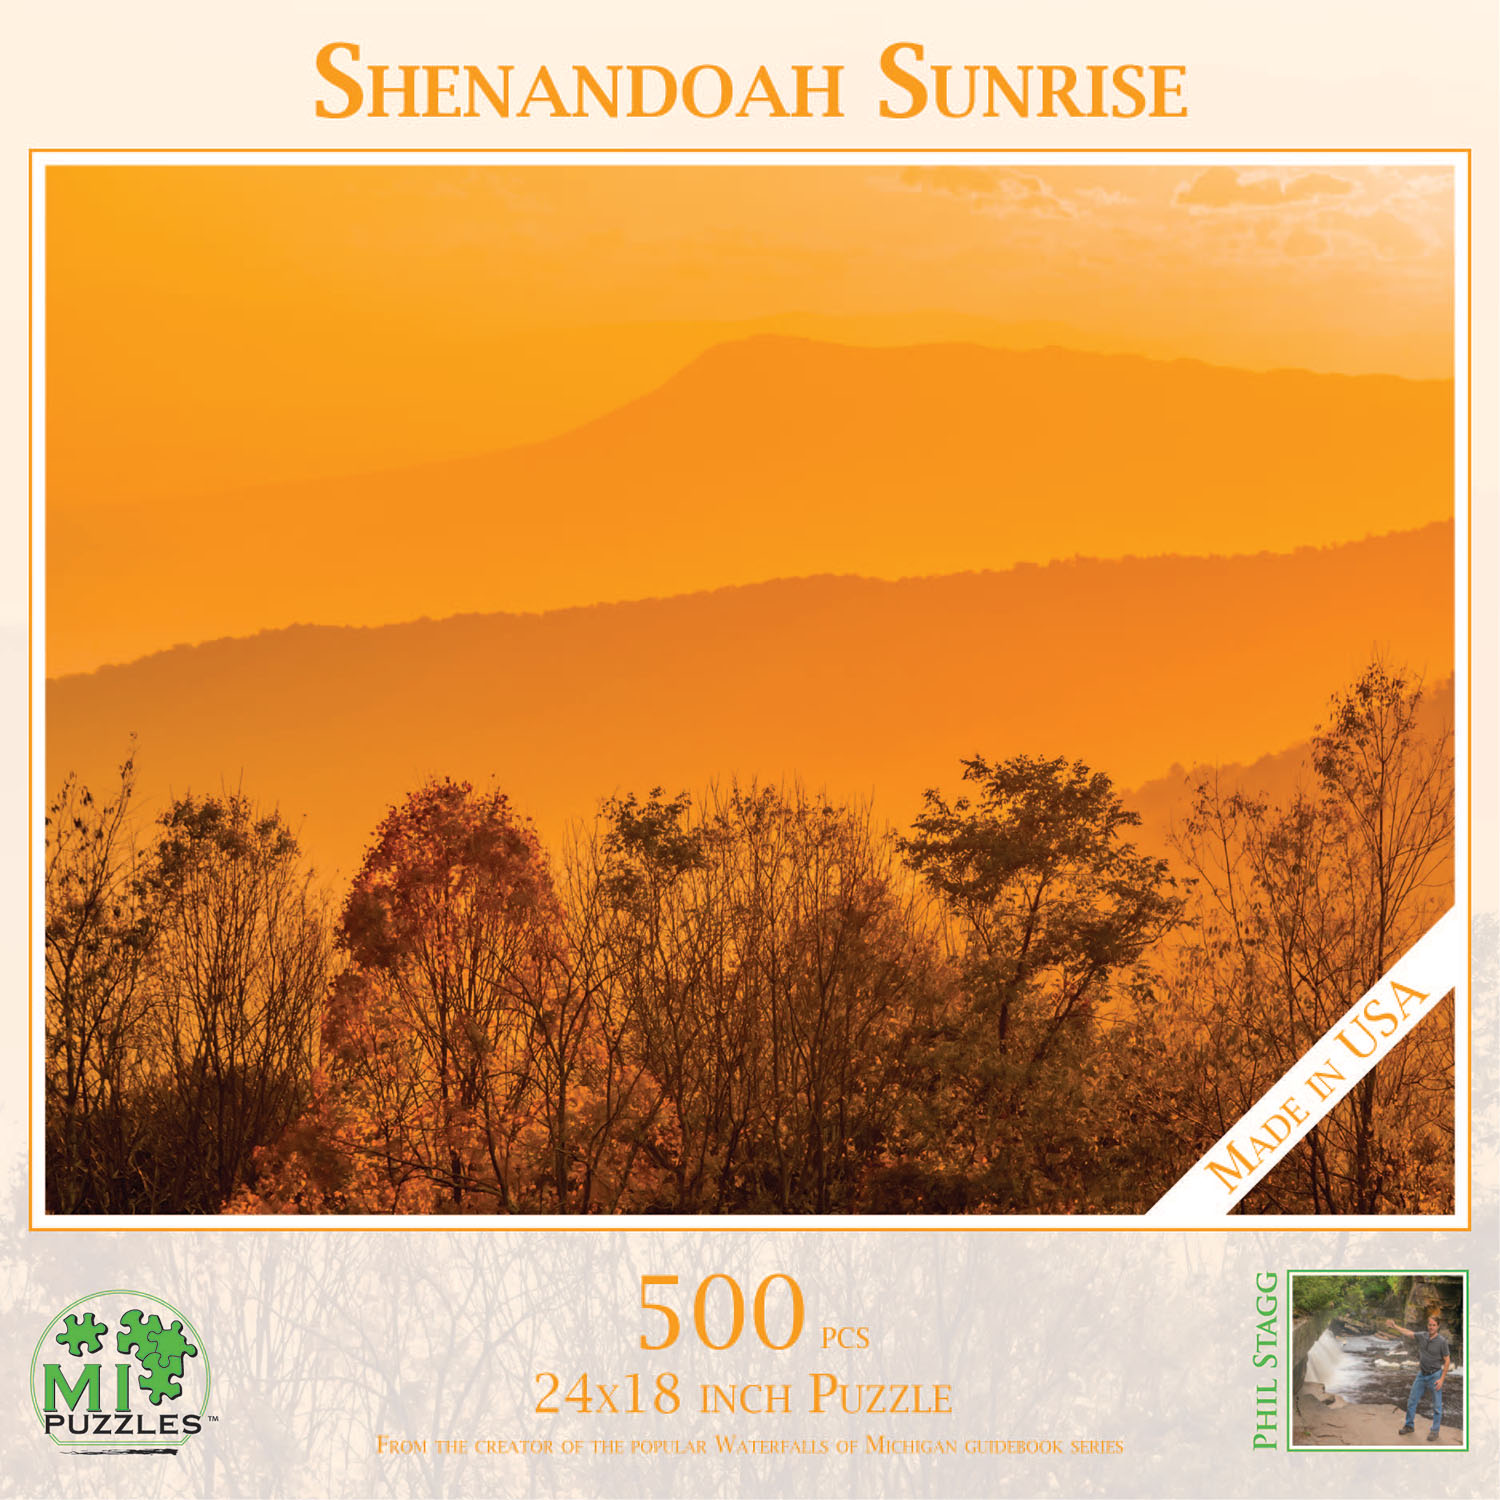 Shenandoah Sunrise Mountain Jigsaw Puzzle